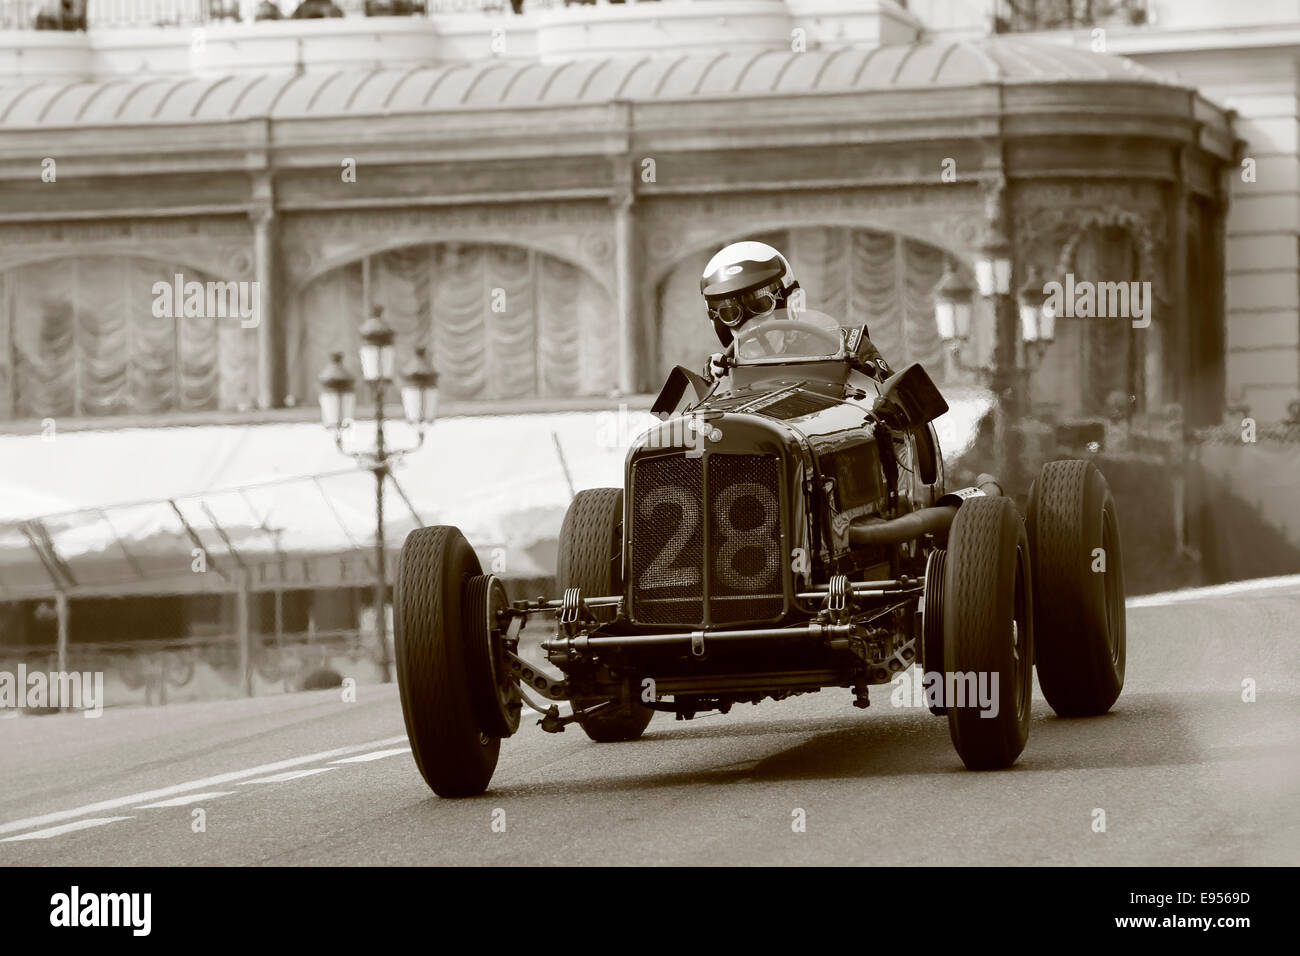 Voiture de course historique époque B, construit en 1936, le chauffeur Paddins Dowling, 9e Grand Prix de Monaco Historique, Principauté de Monaco Banque D'Images